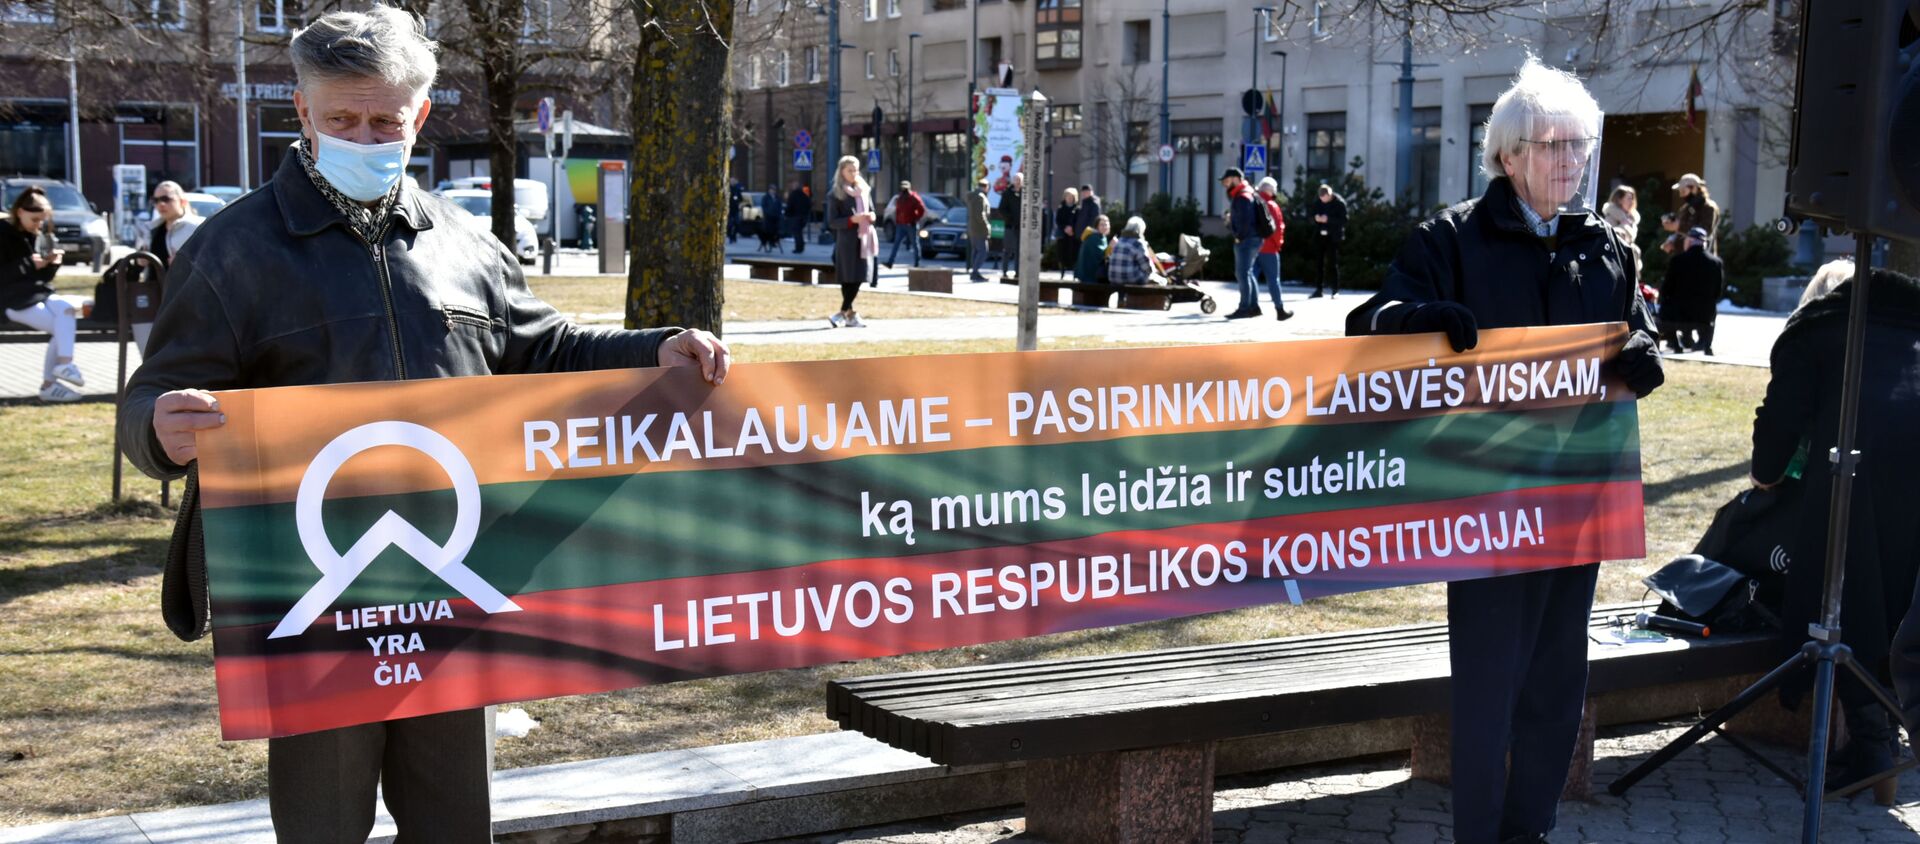 Митинг перед зданием Сейма Литвы в Вильнюсе - Sputnik Литва, 1920, 24.03.2021